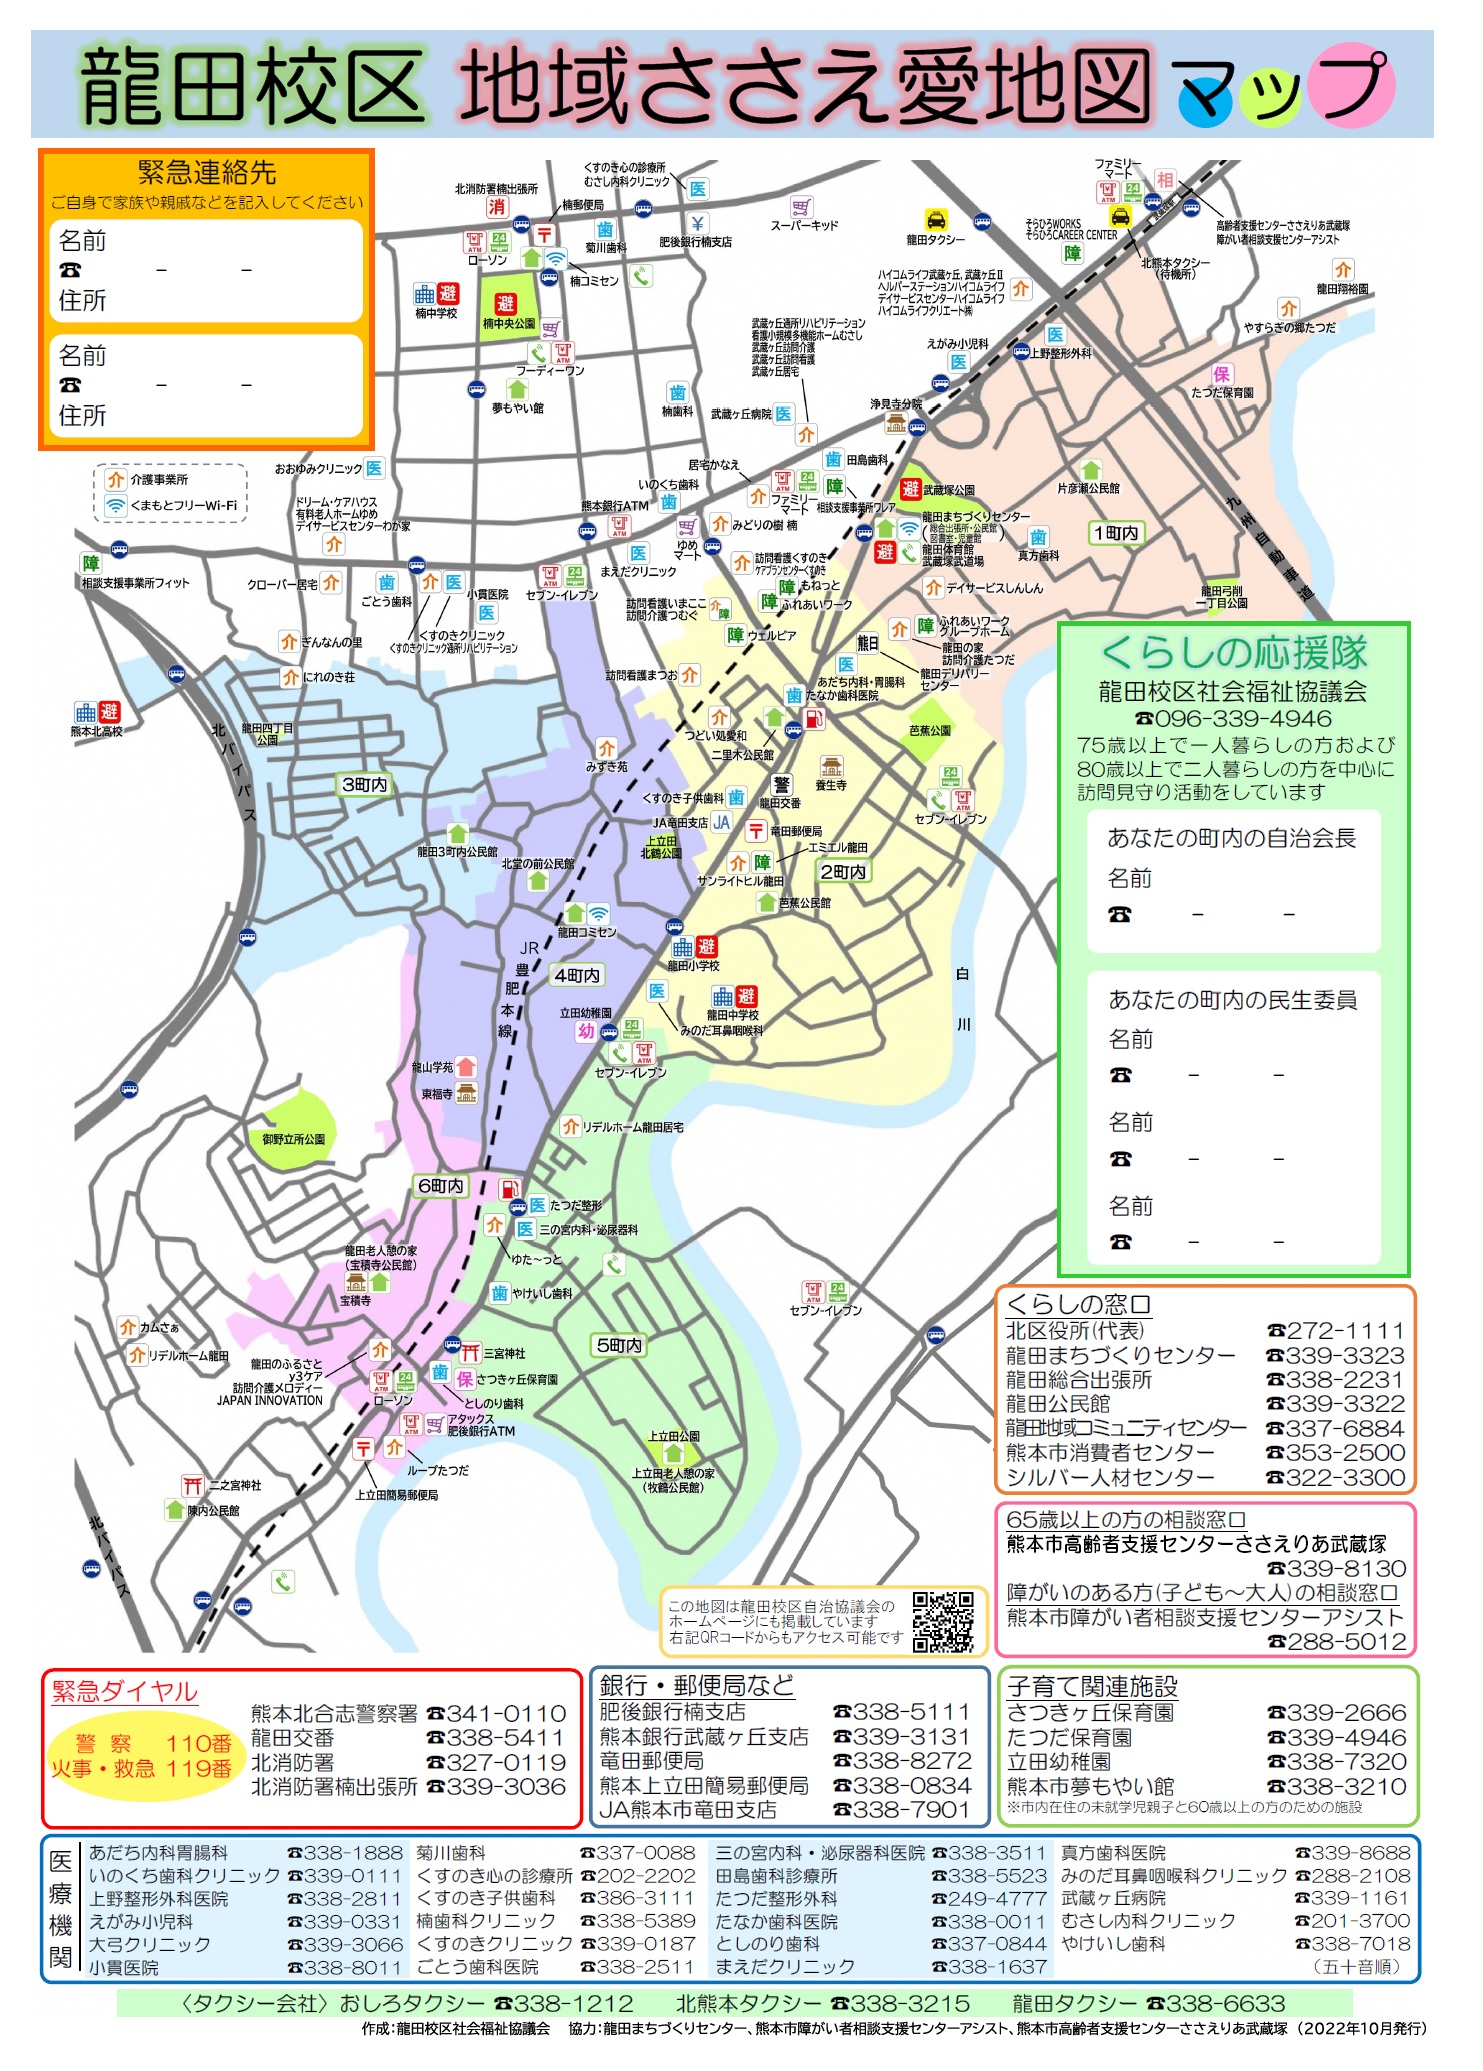 龍田校区地域ささえ愛地図（2022年10月発行）